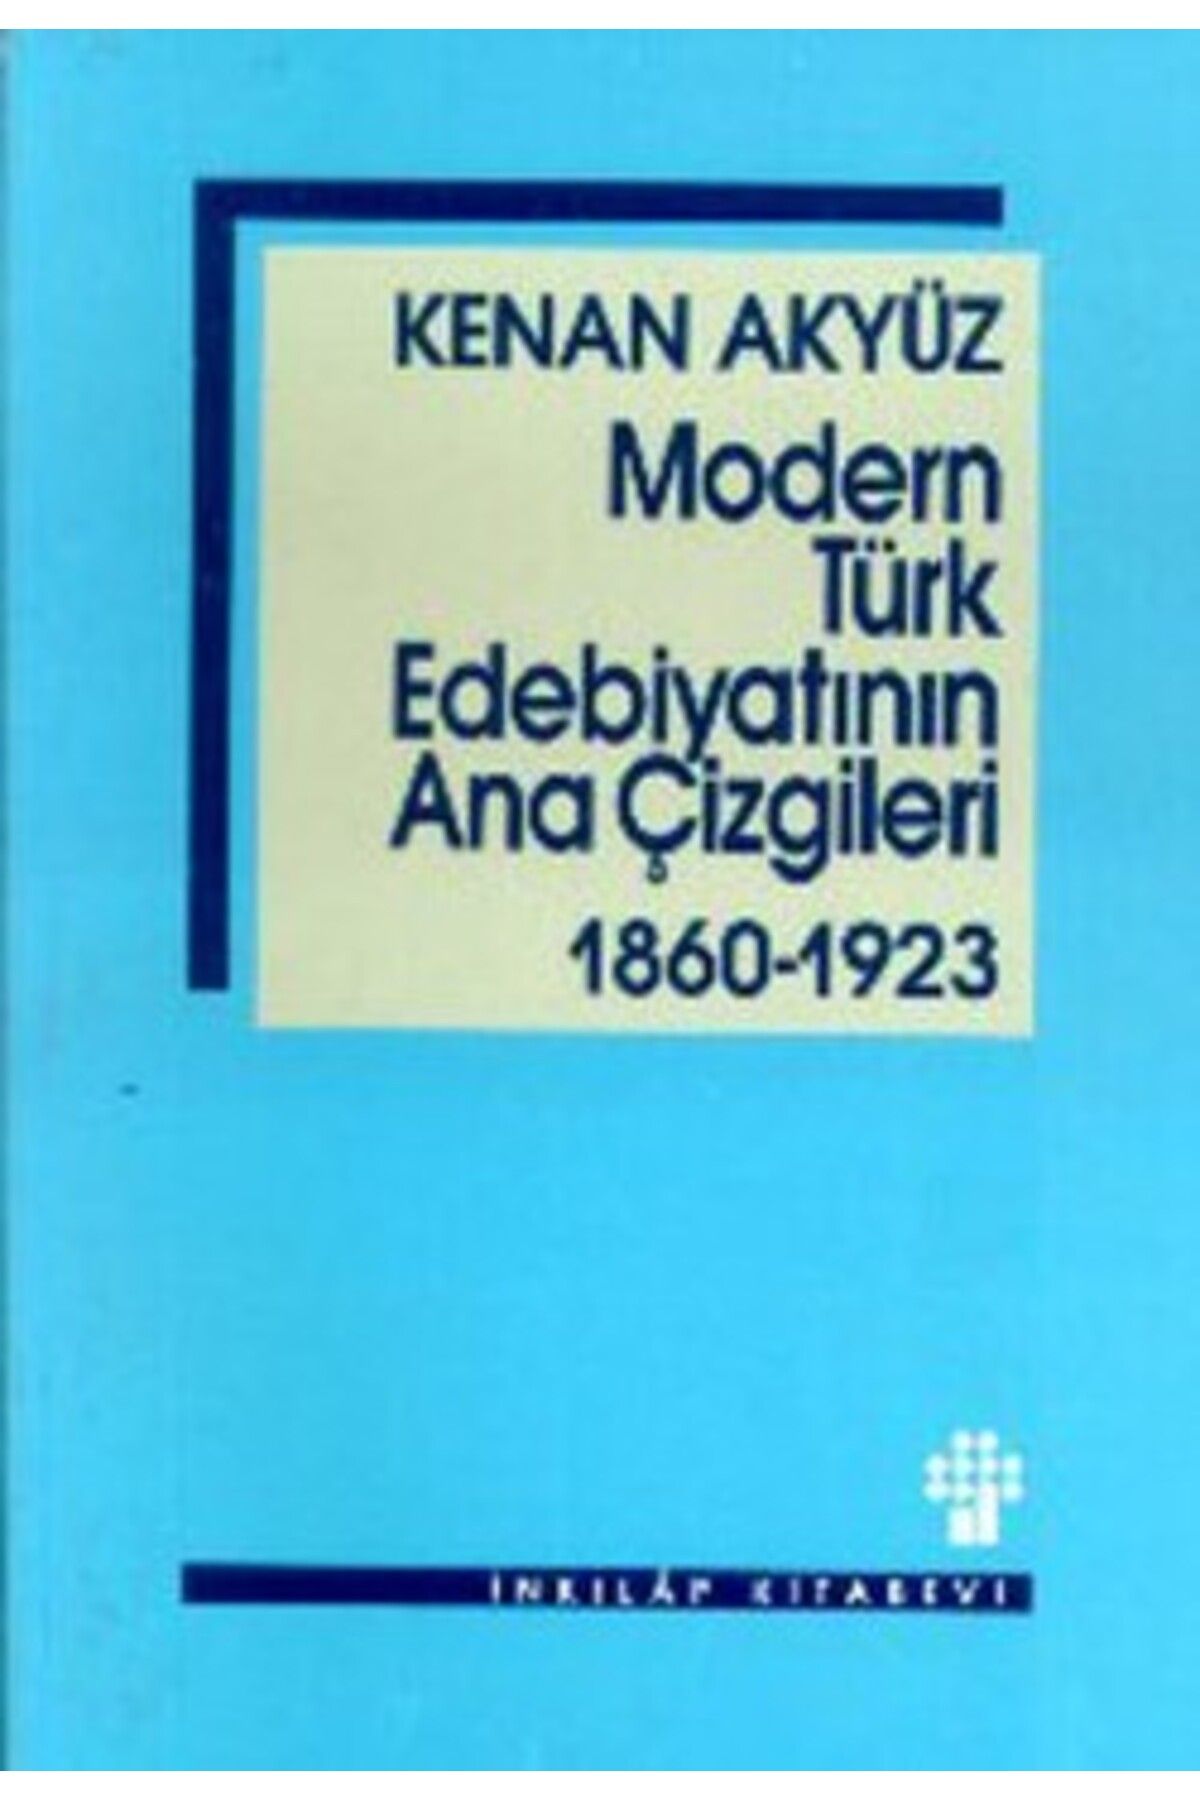 İnkılap Kitabevi Modern Türk Edebiyatının Ana Çizgileri